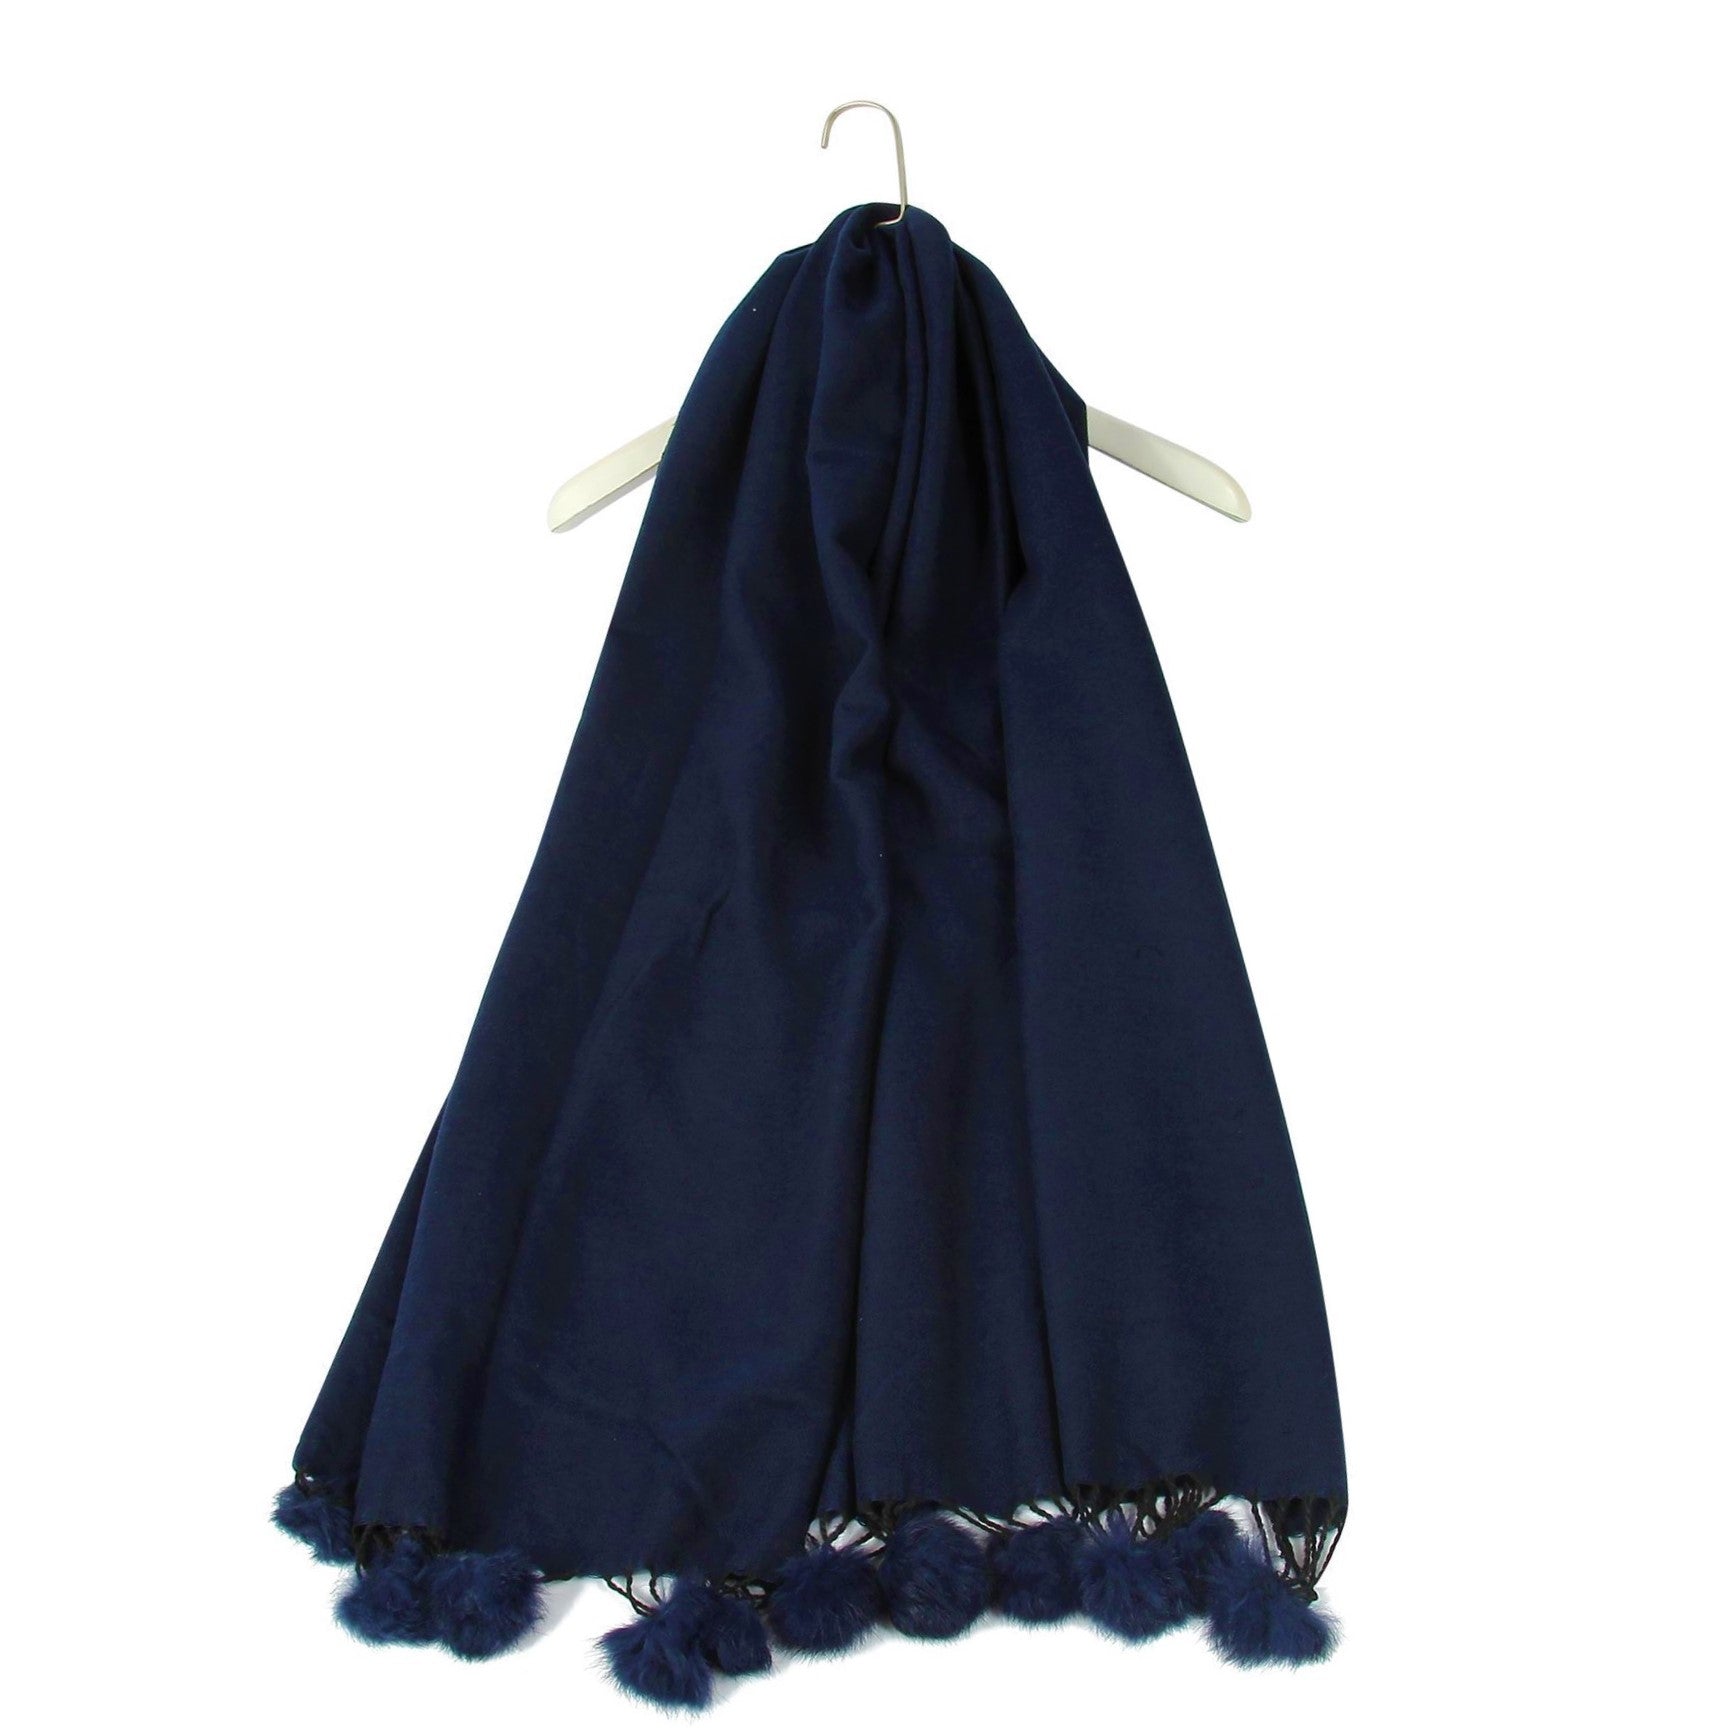 Šála-šátek s Pravou Pom Pom Kožešinou, 60 cm x 170 cm, Námořnická modrá | -80% Akce na Šperky